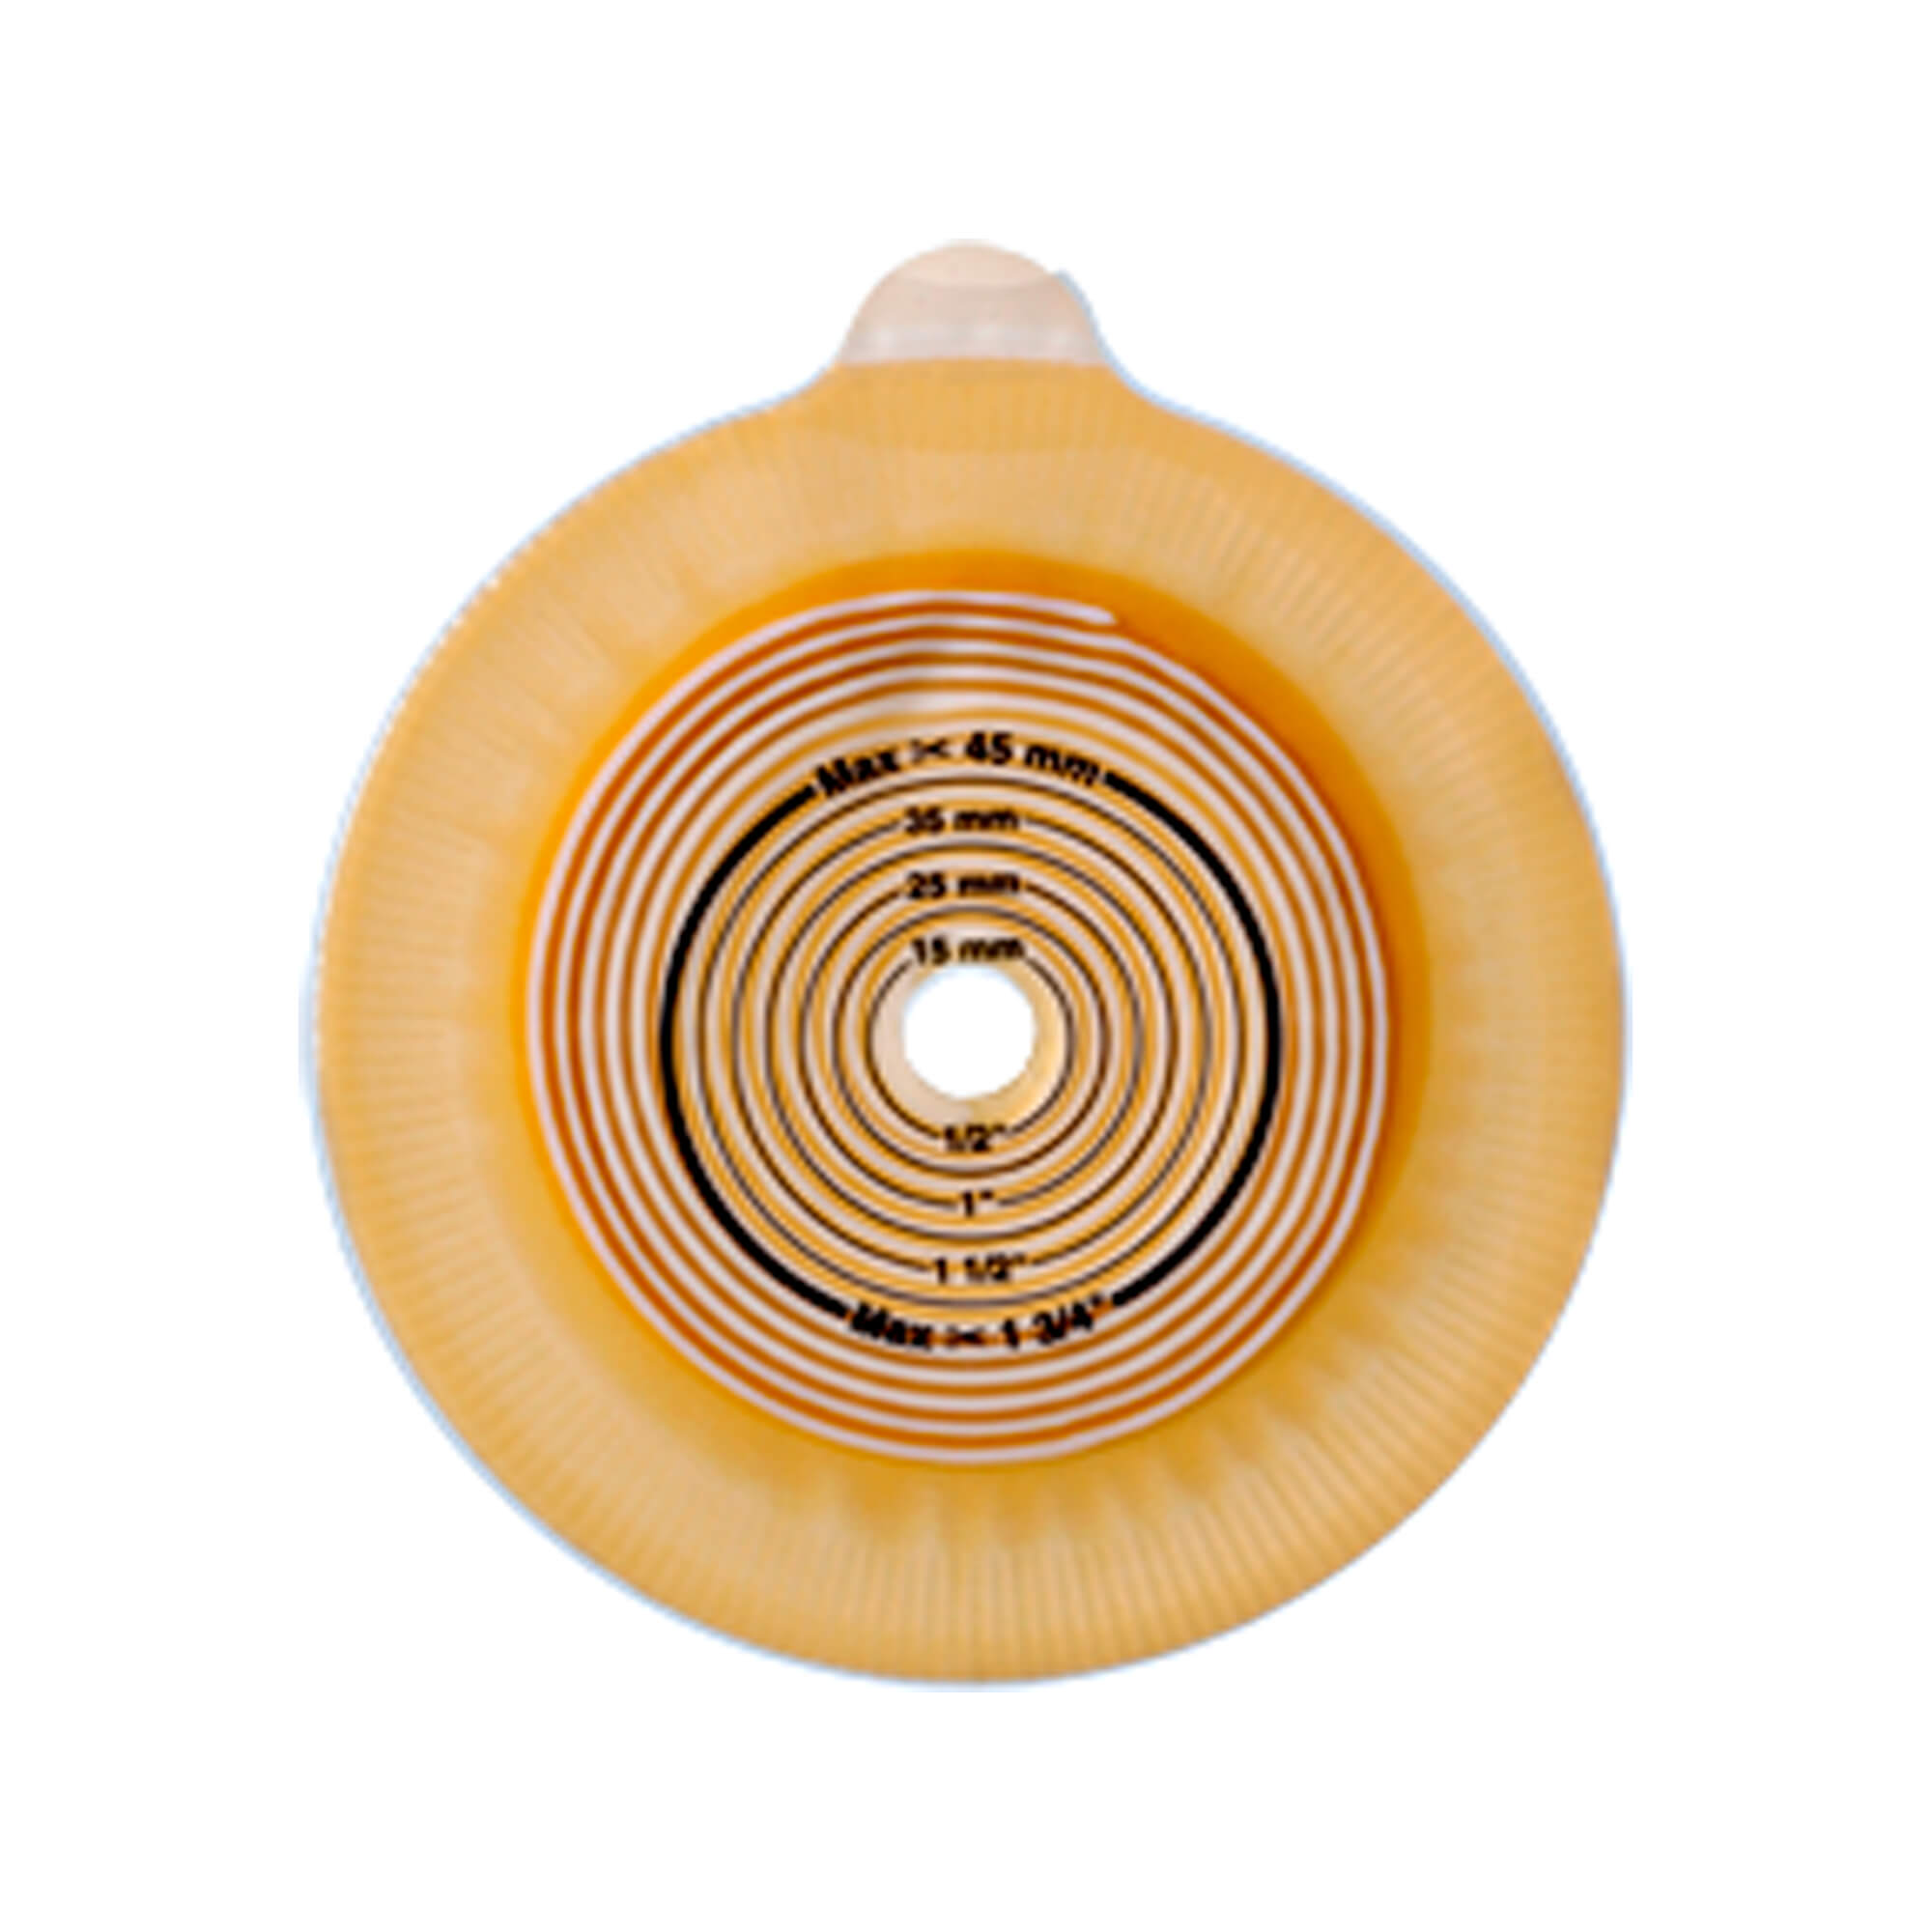 Mit dem besonderen Kopplungsmechanismus kombiniert den Assura Hautschutz mit der Rastringsystem mit dem hörbaren ‘Klick’geräusch.